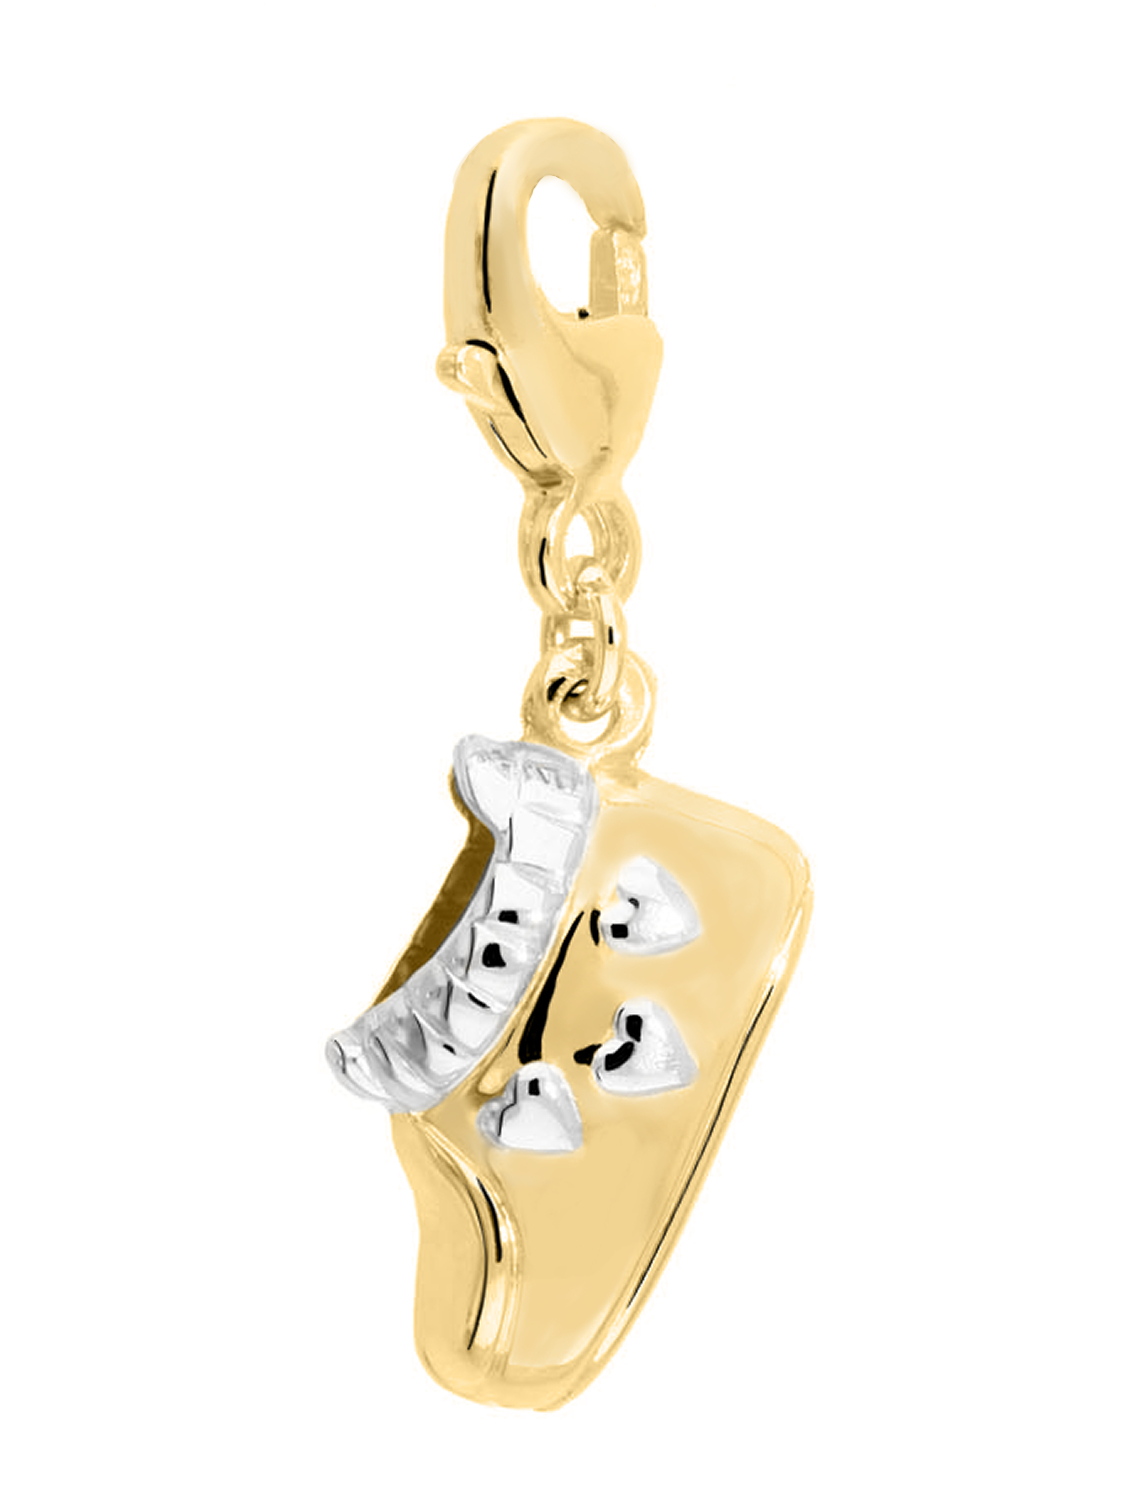 Baby Shoe - Babyschuh Charm Motivanhänger 585 Gold mit Karabiner